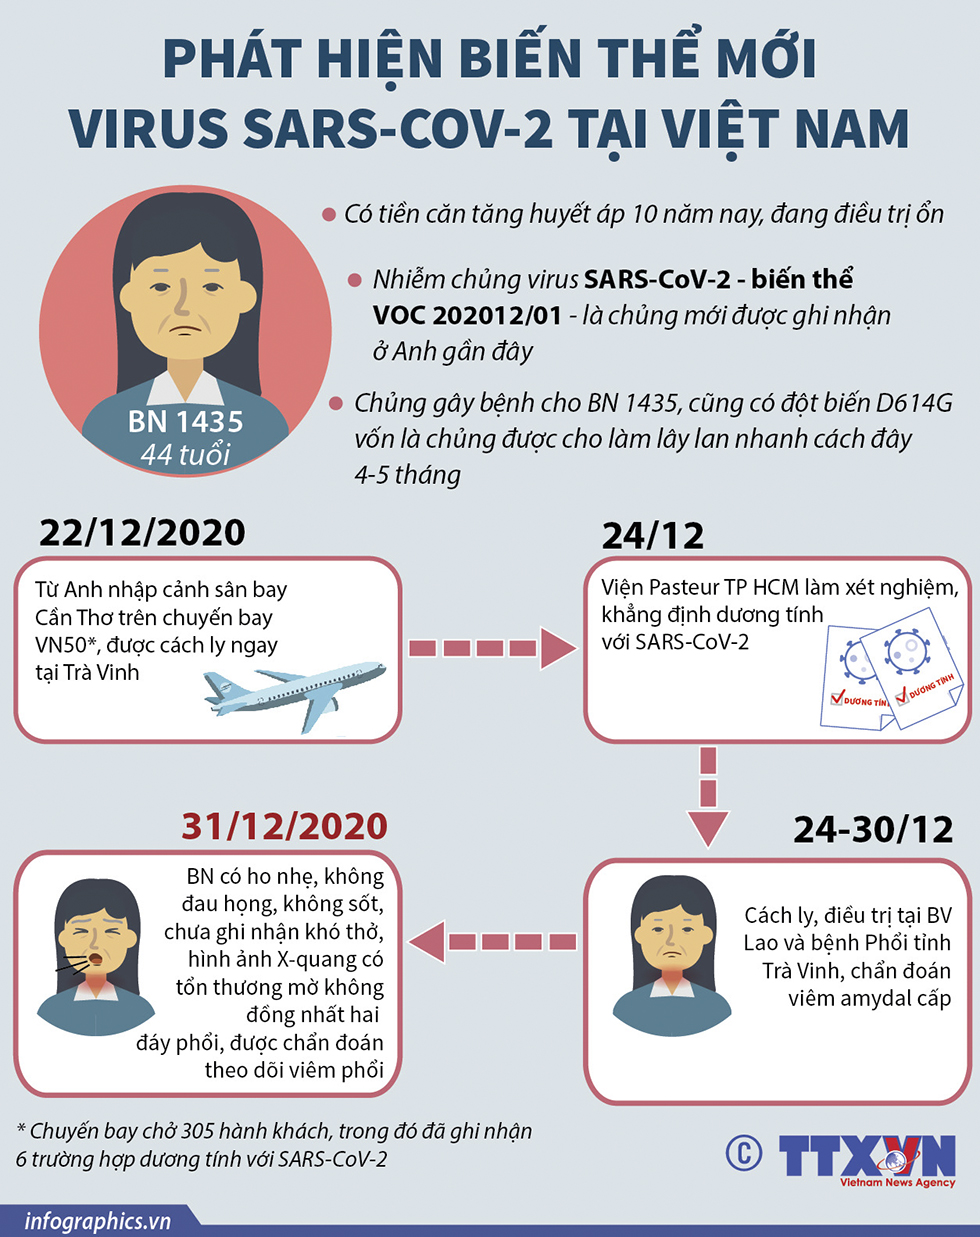 PHÁT HIỆN BIẾN THỂ MỚI VIRUS SARS-COV-2 TẠI VIỆT NAM